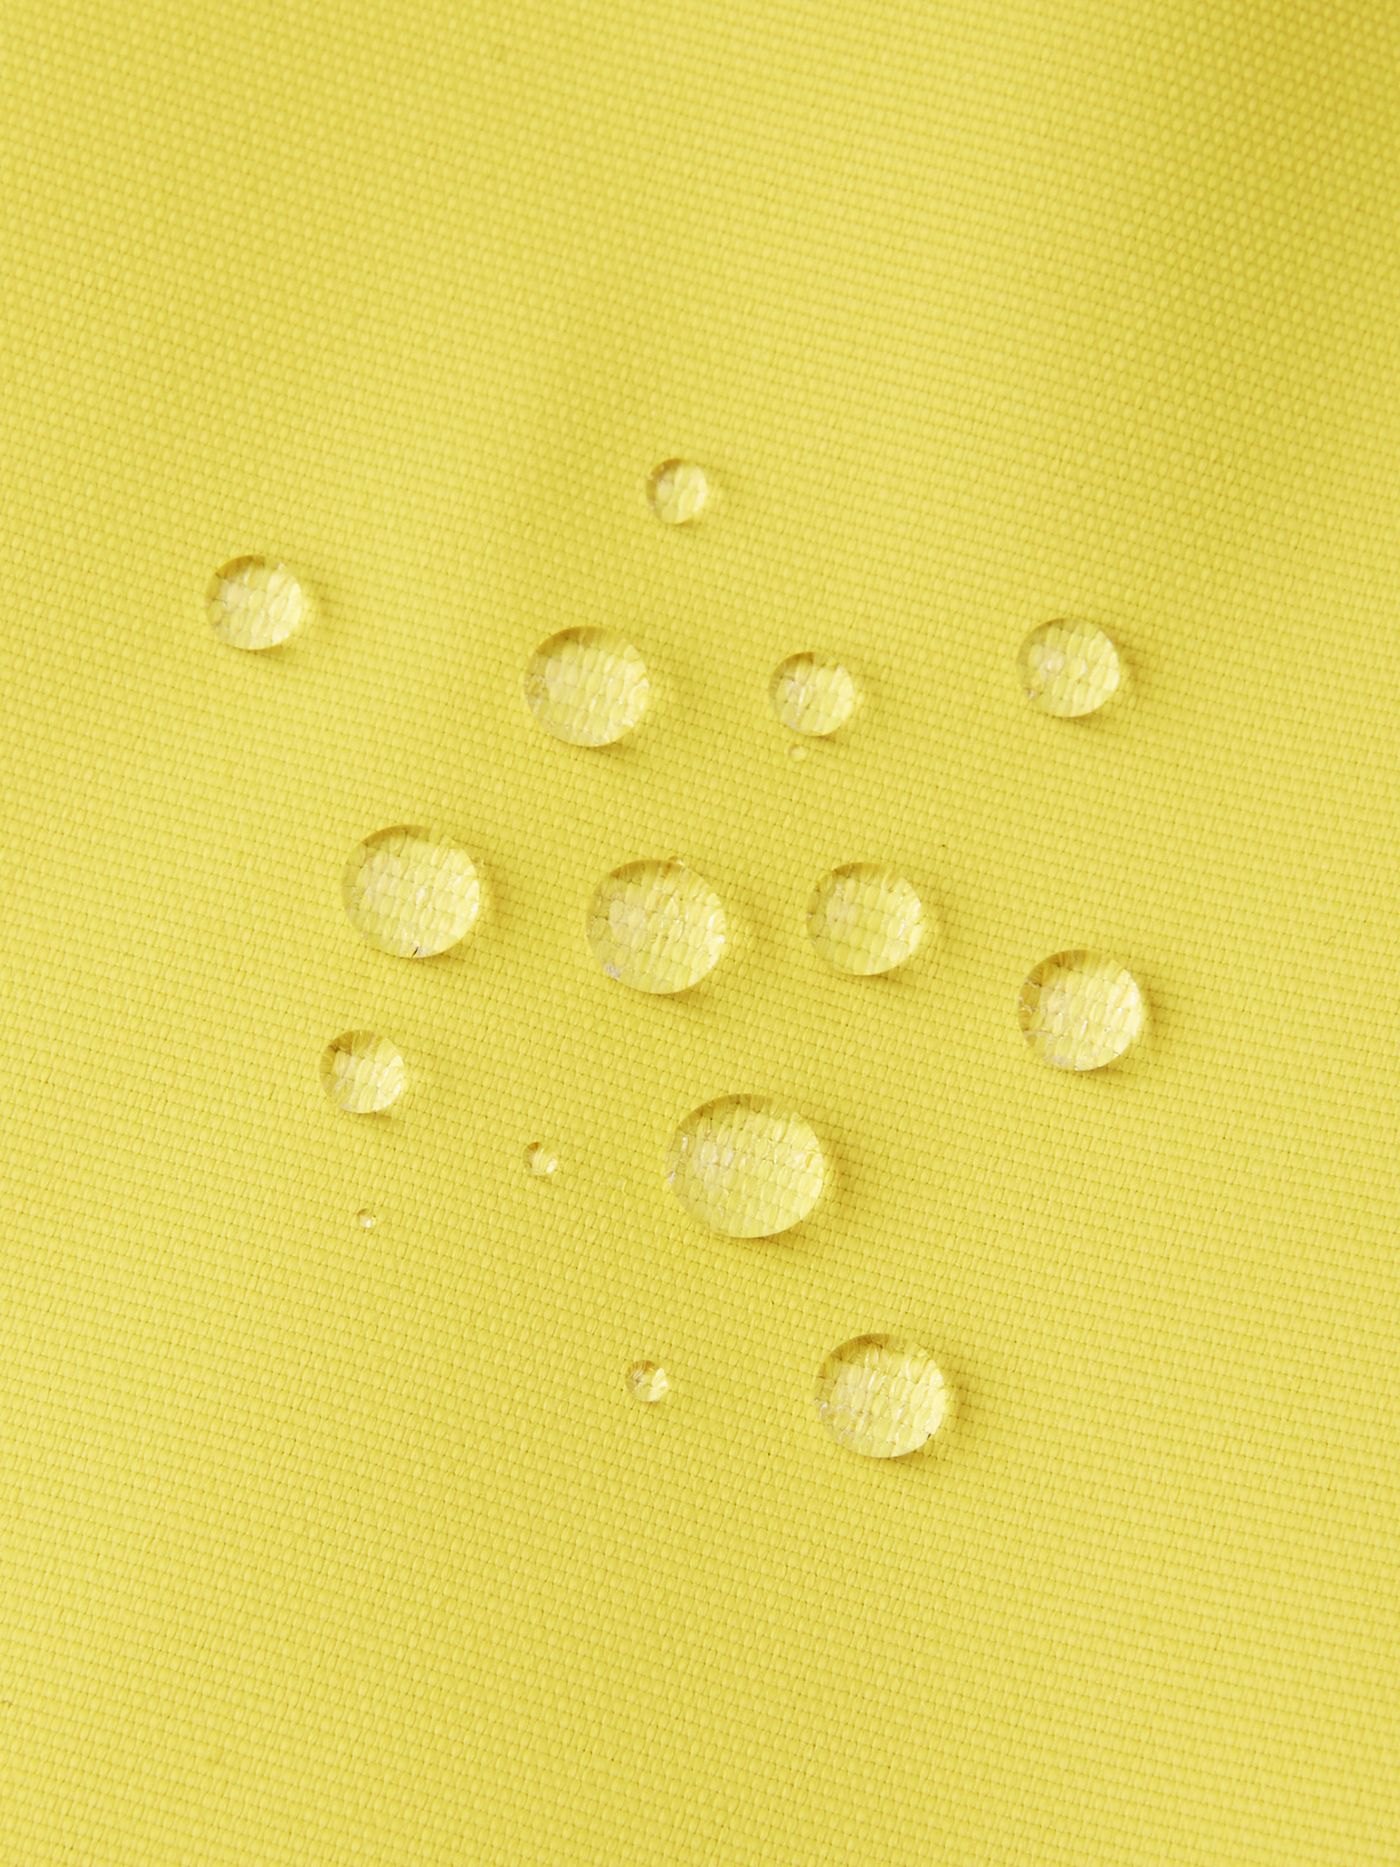 Reiman Kapelli Reimatec välikausihaalari keltaisessa värissä lähikuvassa kangas ja vesipisarat